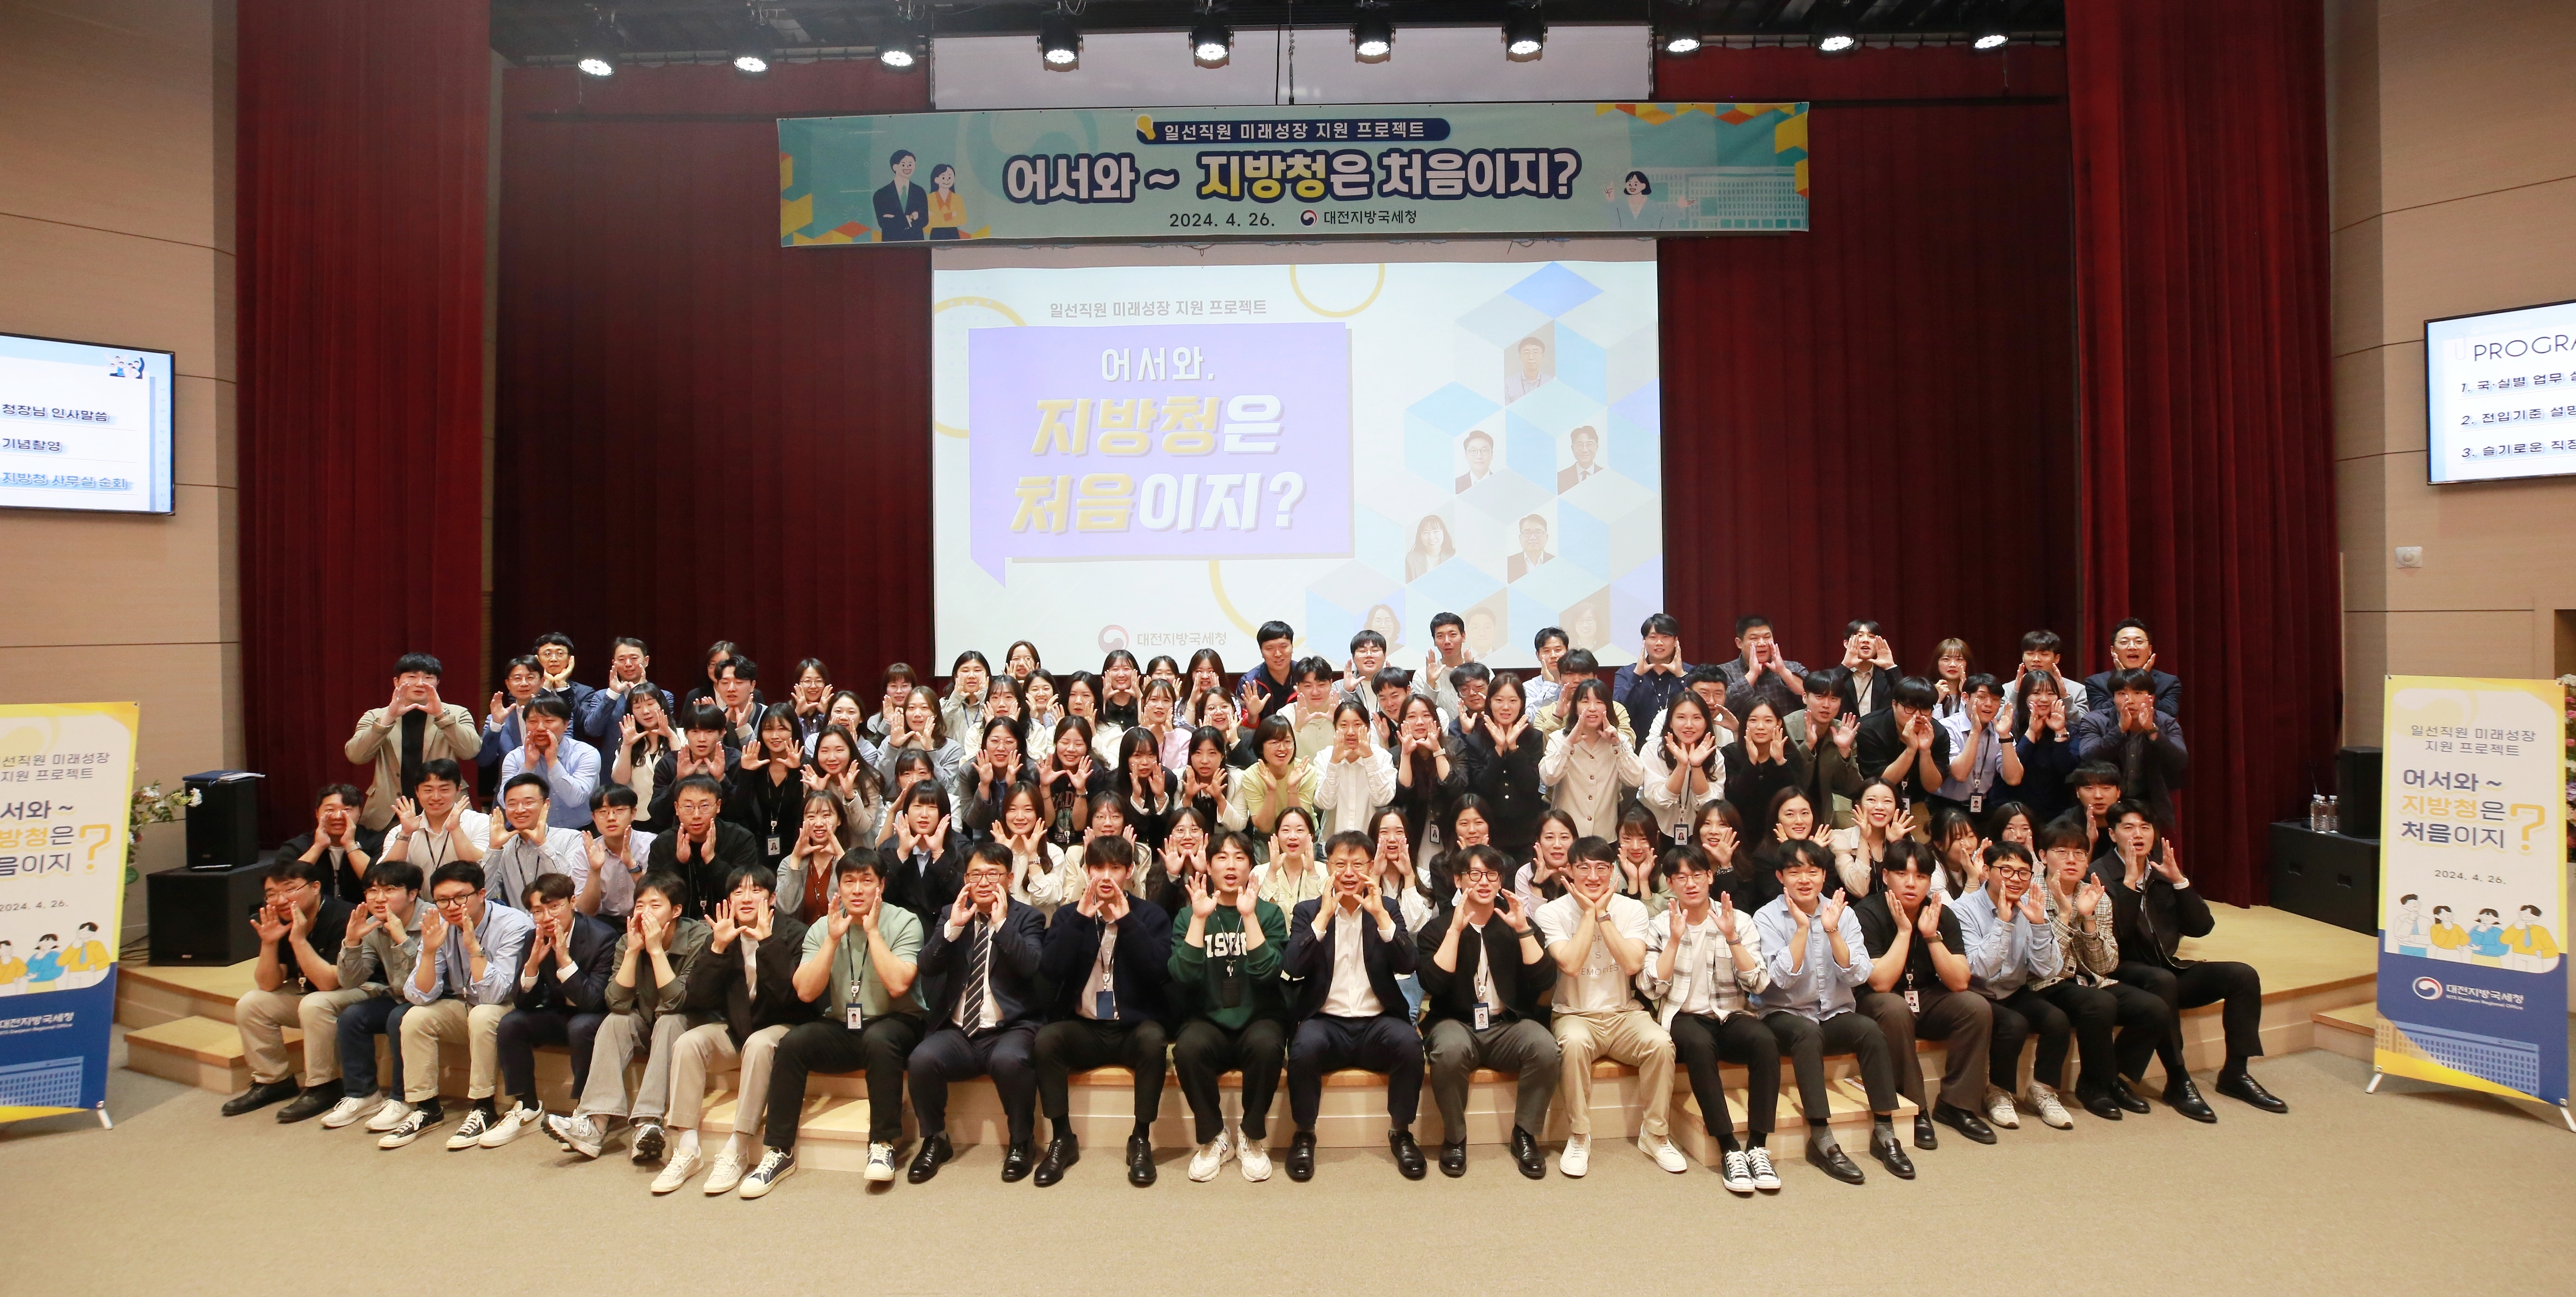 대전지방국세청 일선직원 미래성장 지원 프로젝트 「어서와 지방청은 처음이지」 개최